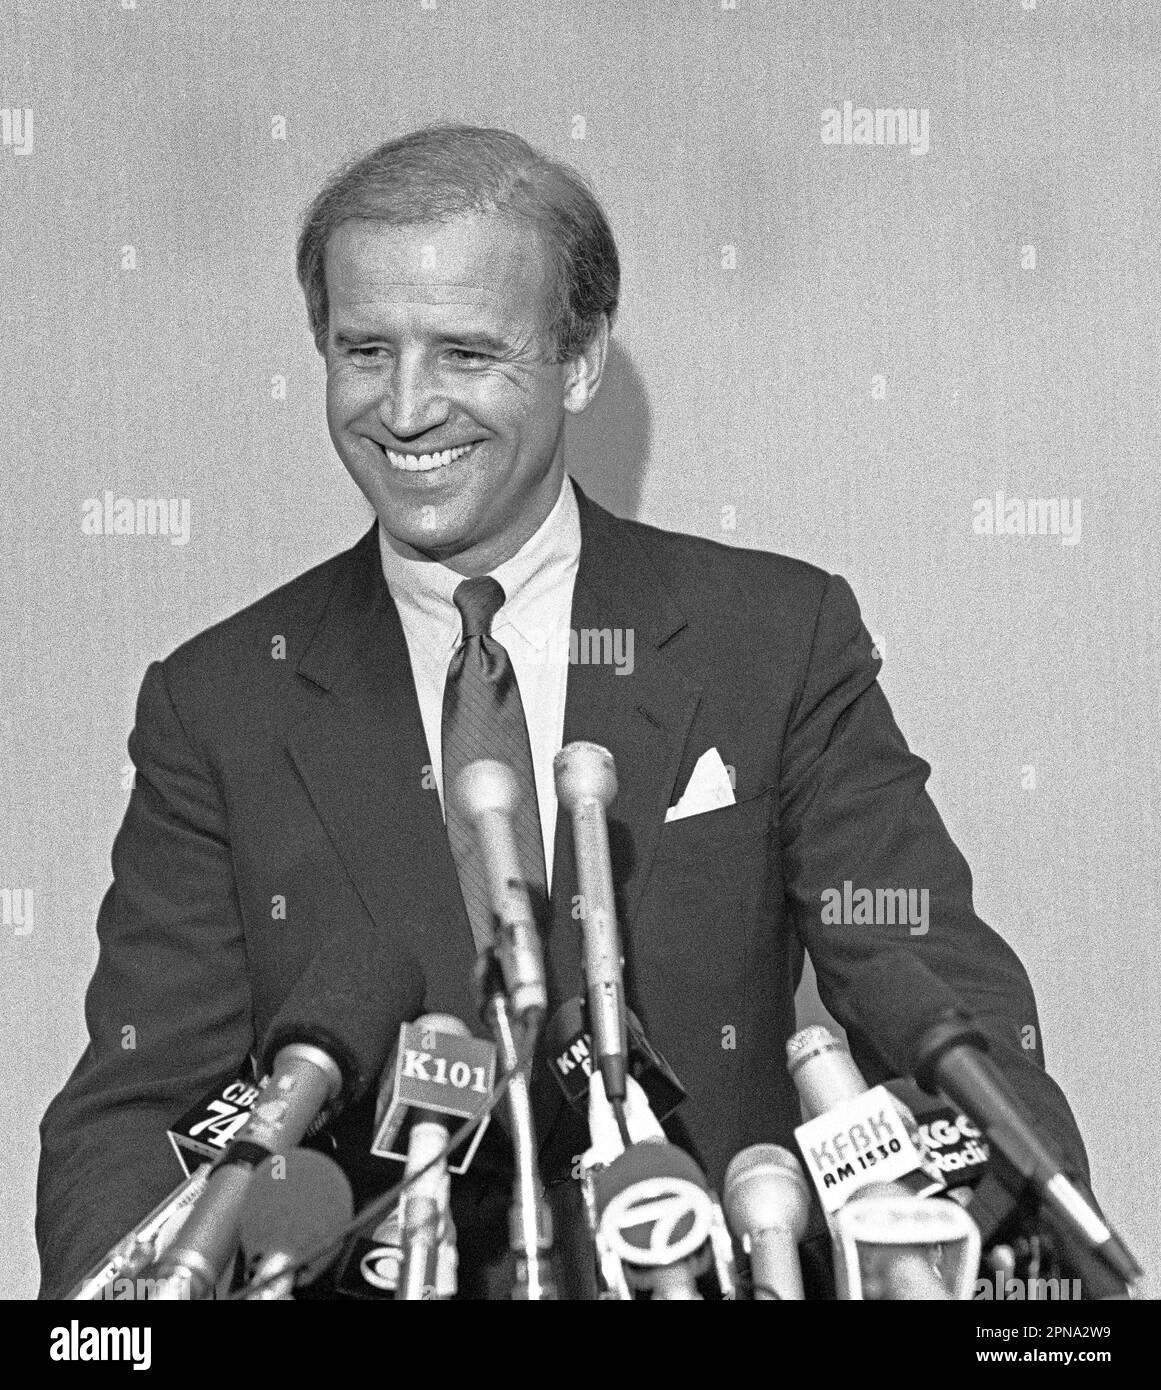 US Senator from Delaware, Joseph Biden campaigns for Democratic Presidential  nomination in 1987 Stock Photo